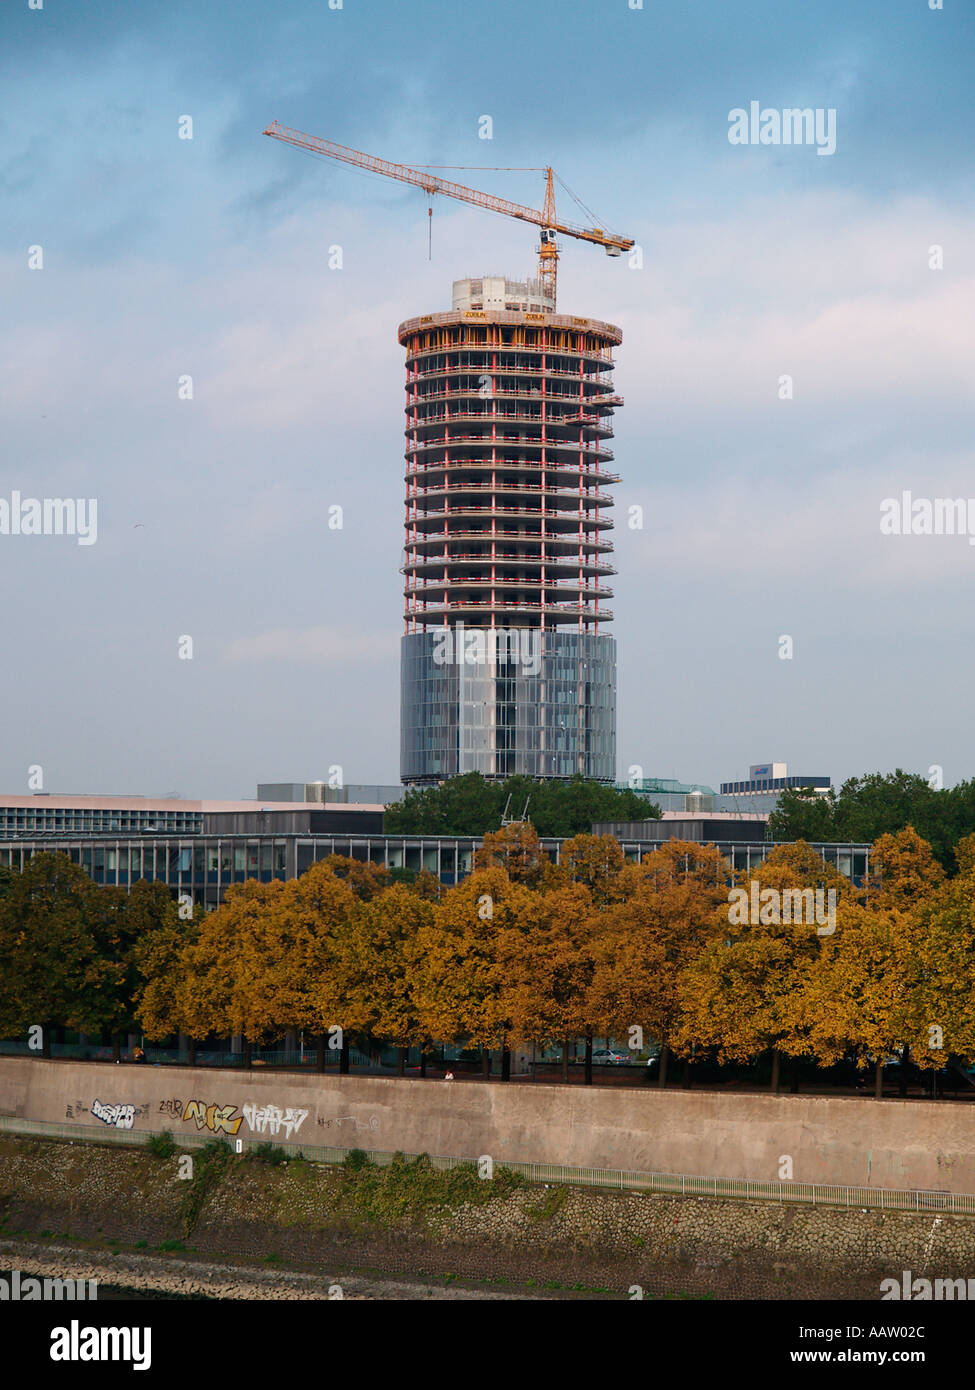 La moitié terminé très grande tour de bureau moderne avec grue de construction à Cologne Allemagne Banque D'Images